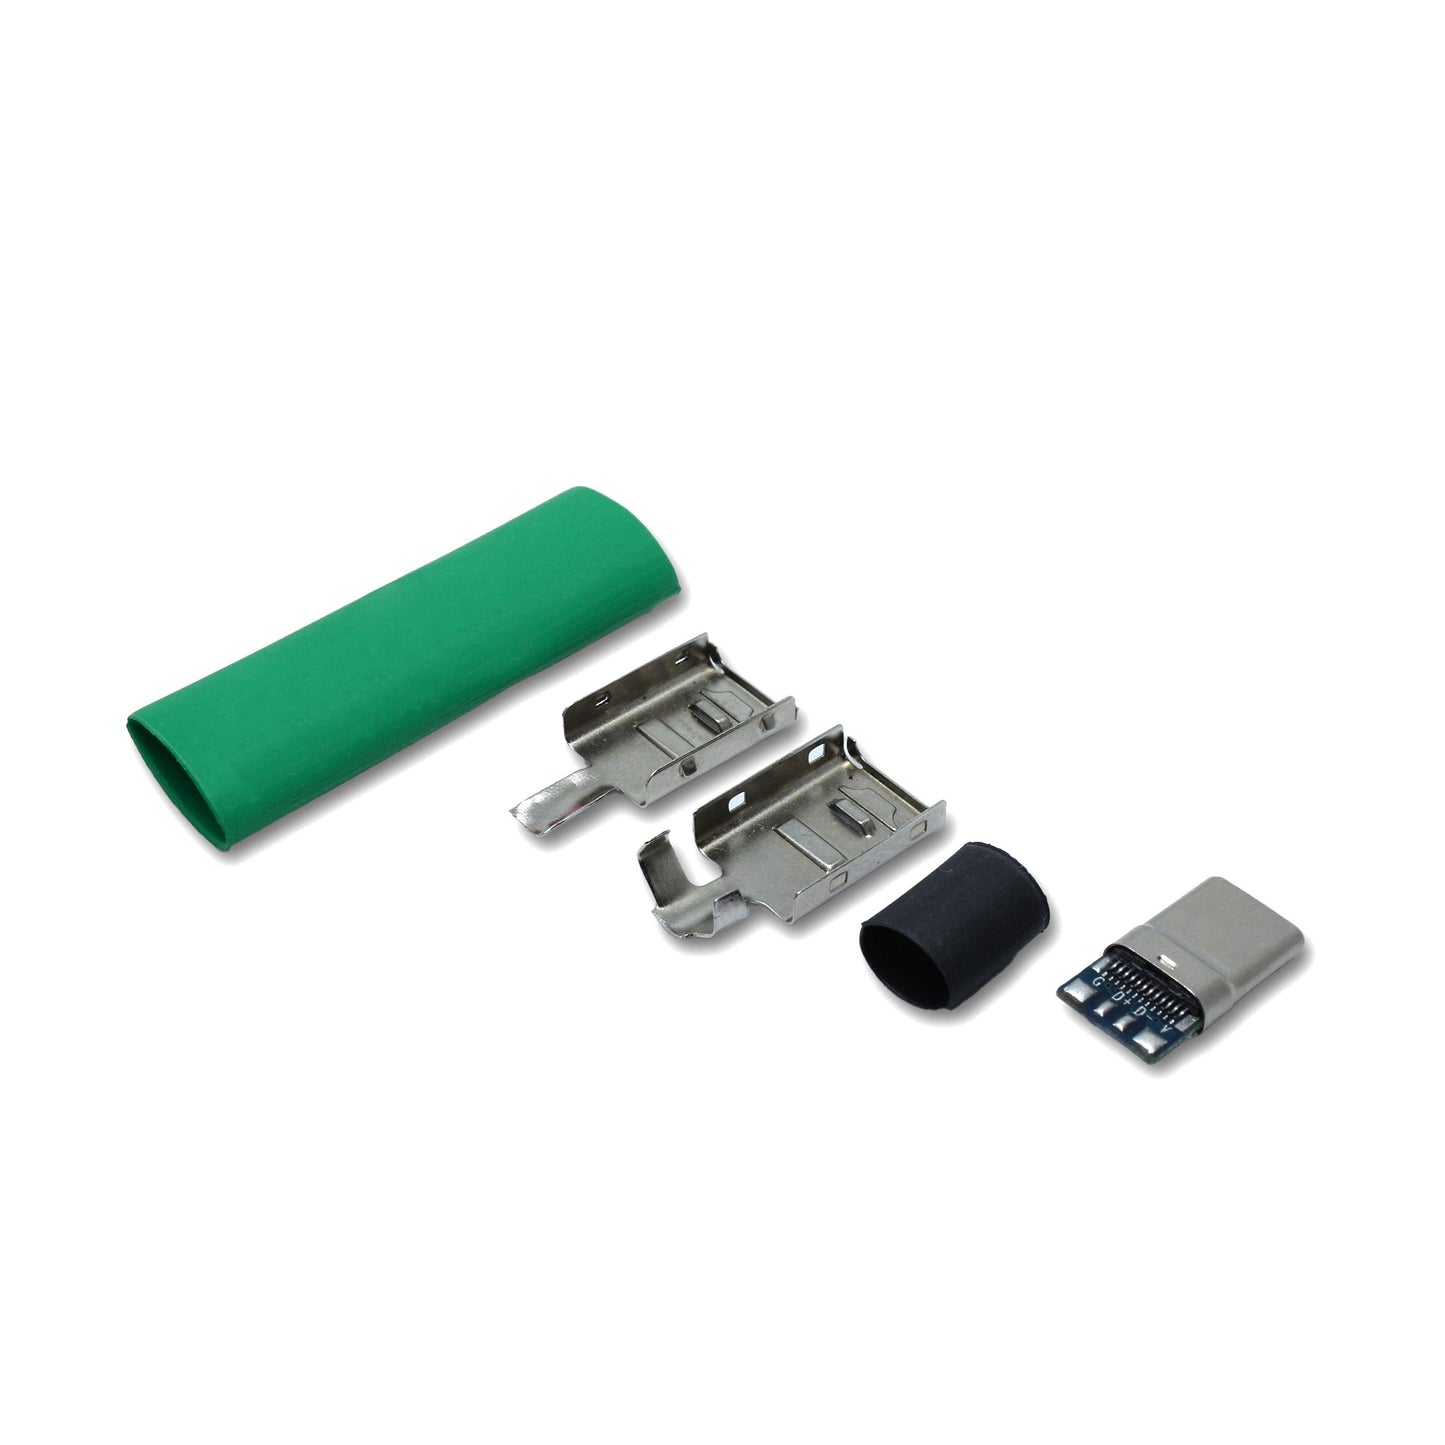 EIn recable USB C Host Stecker Set mit Schrumpfschlauch in der Farbe grün